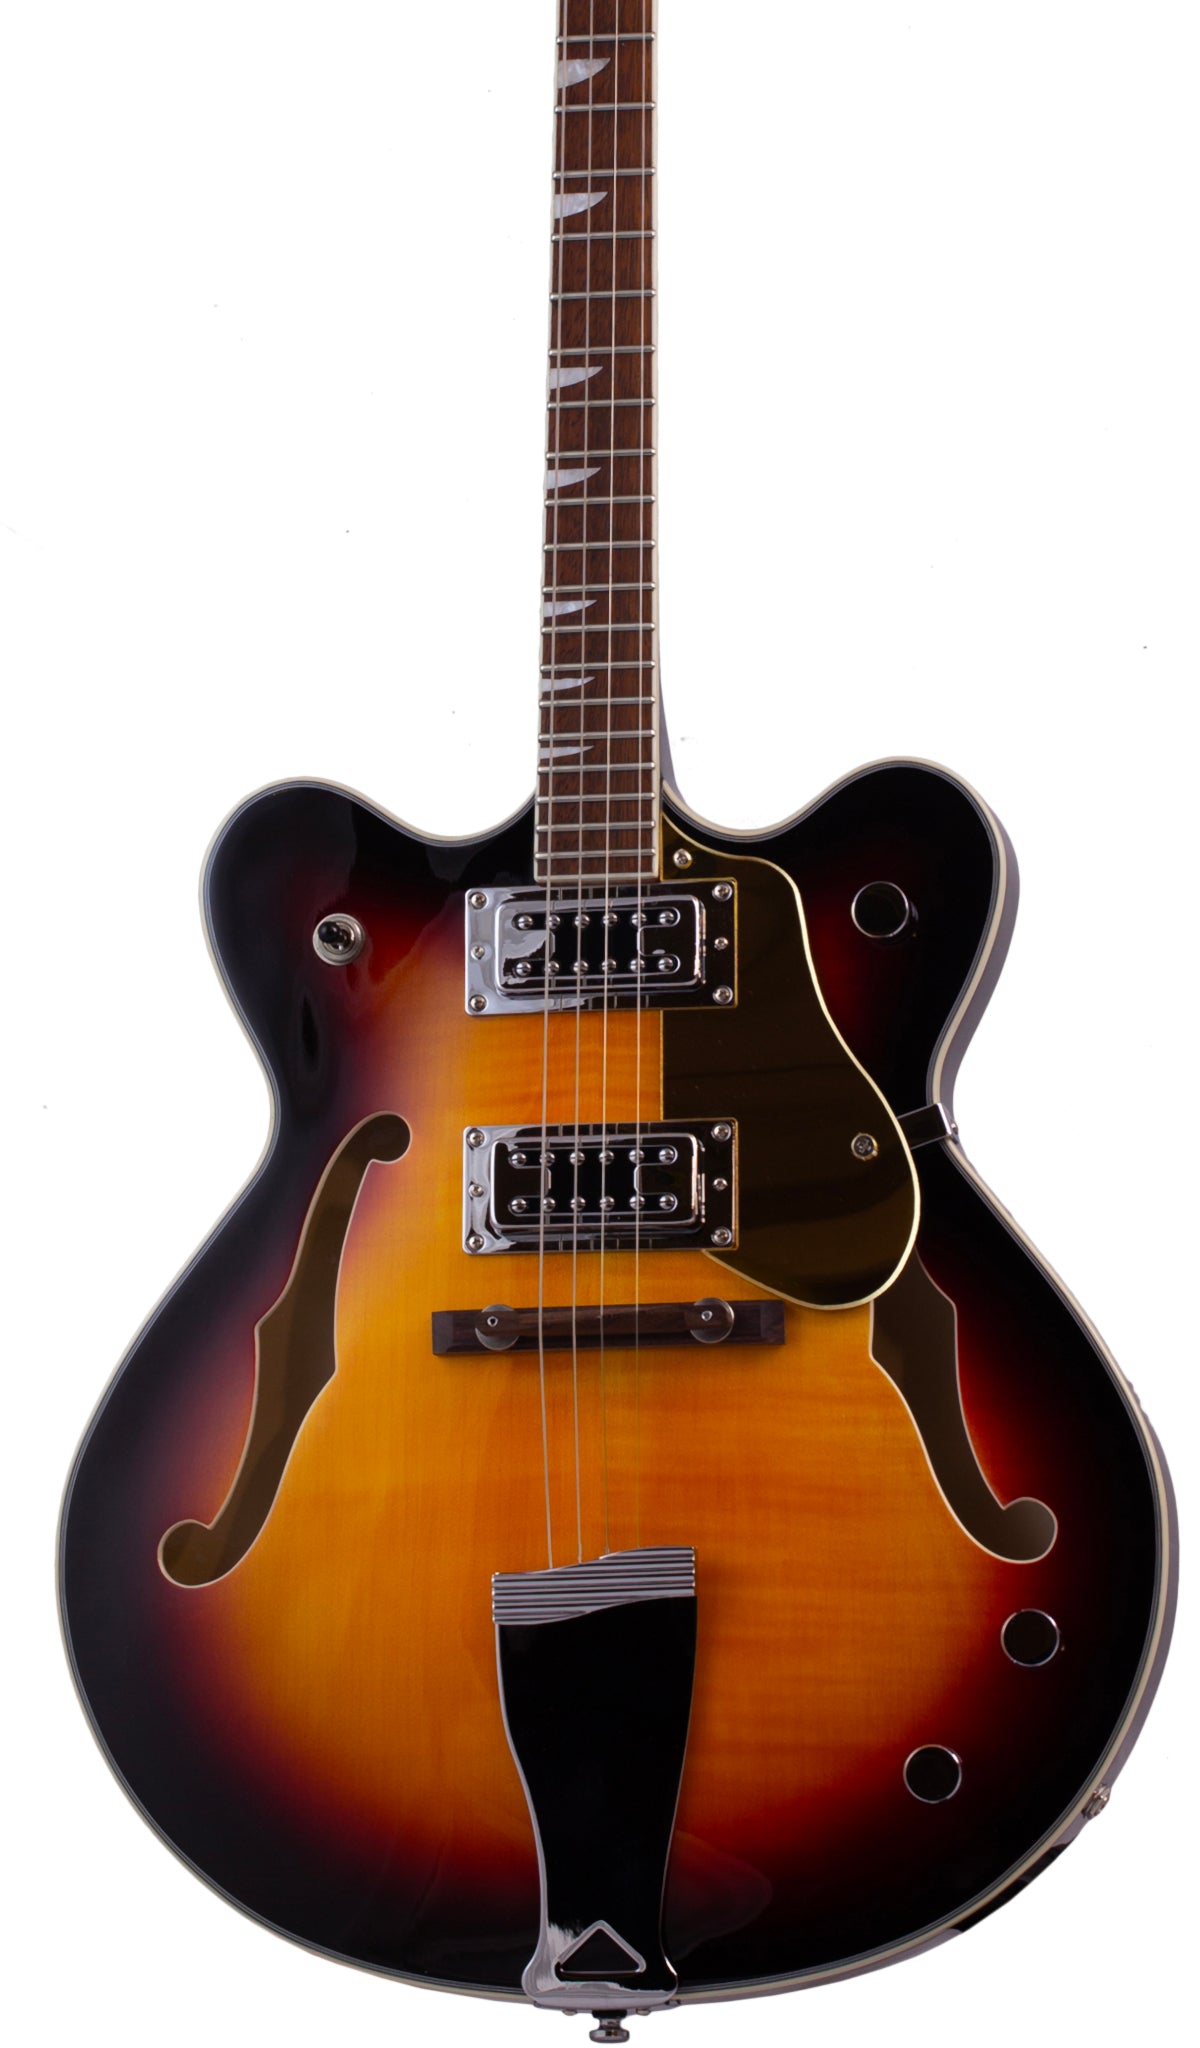 Eastwood Guitars Classic Tenor Sunburst #color_sunburst